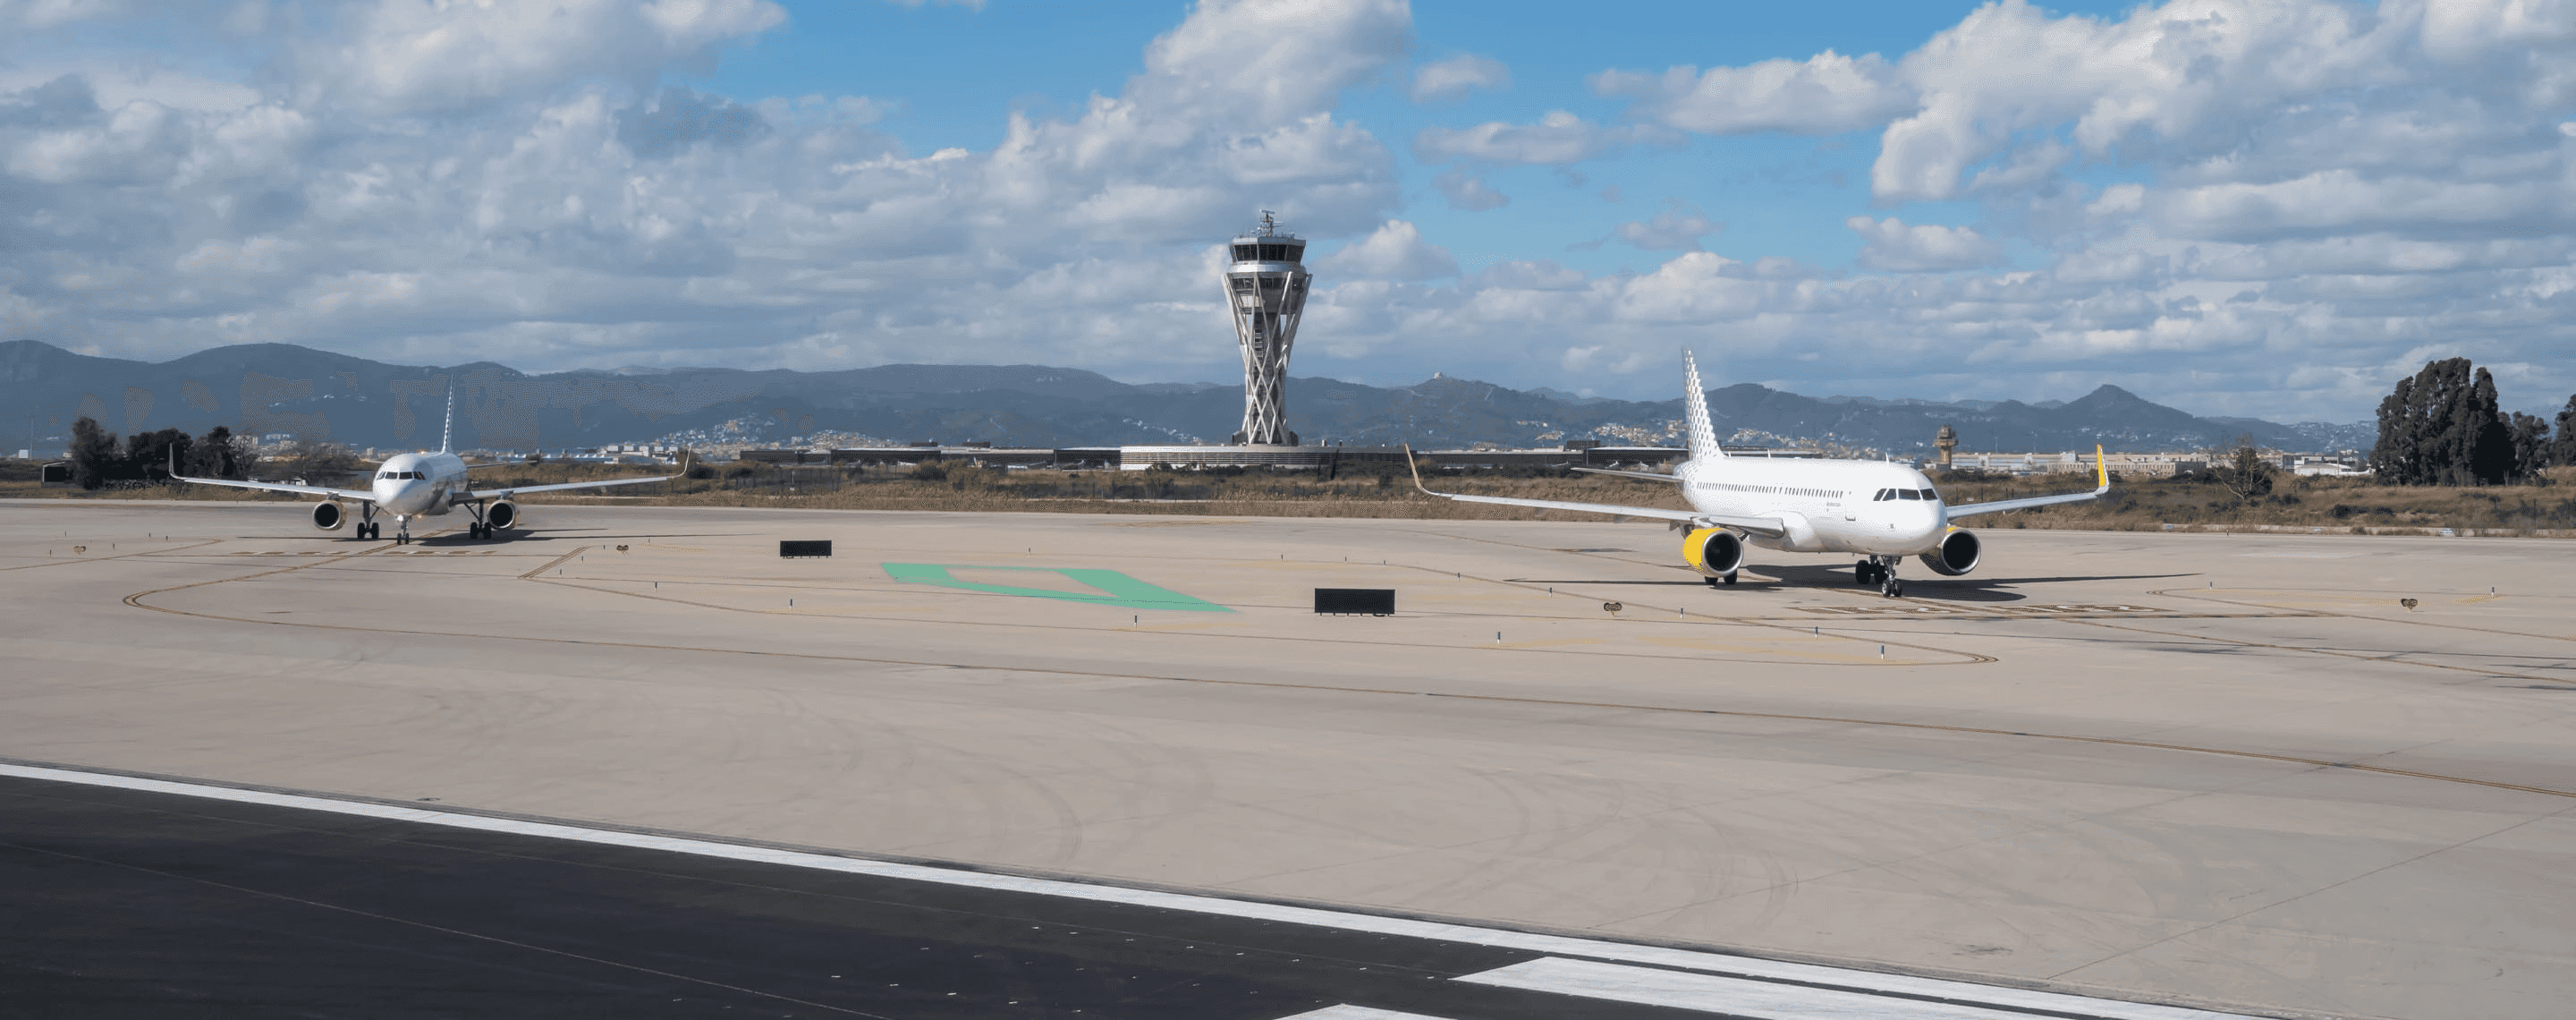 Flughafen Lanzarote mit Tower im Hintergrund